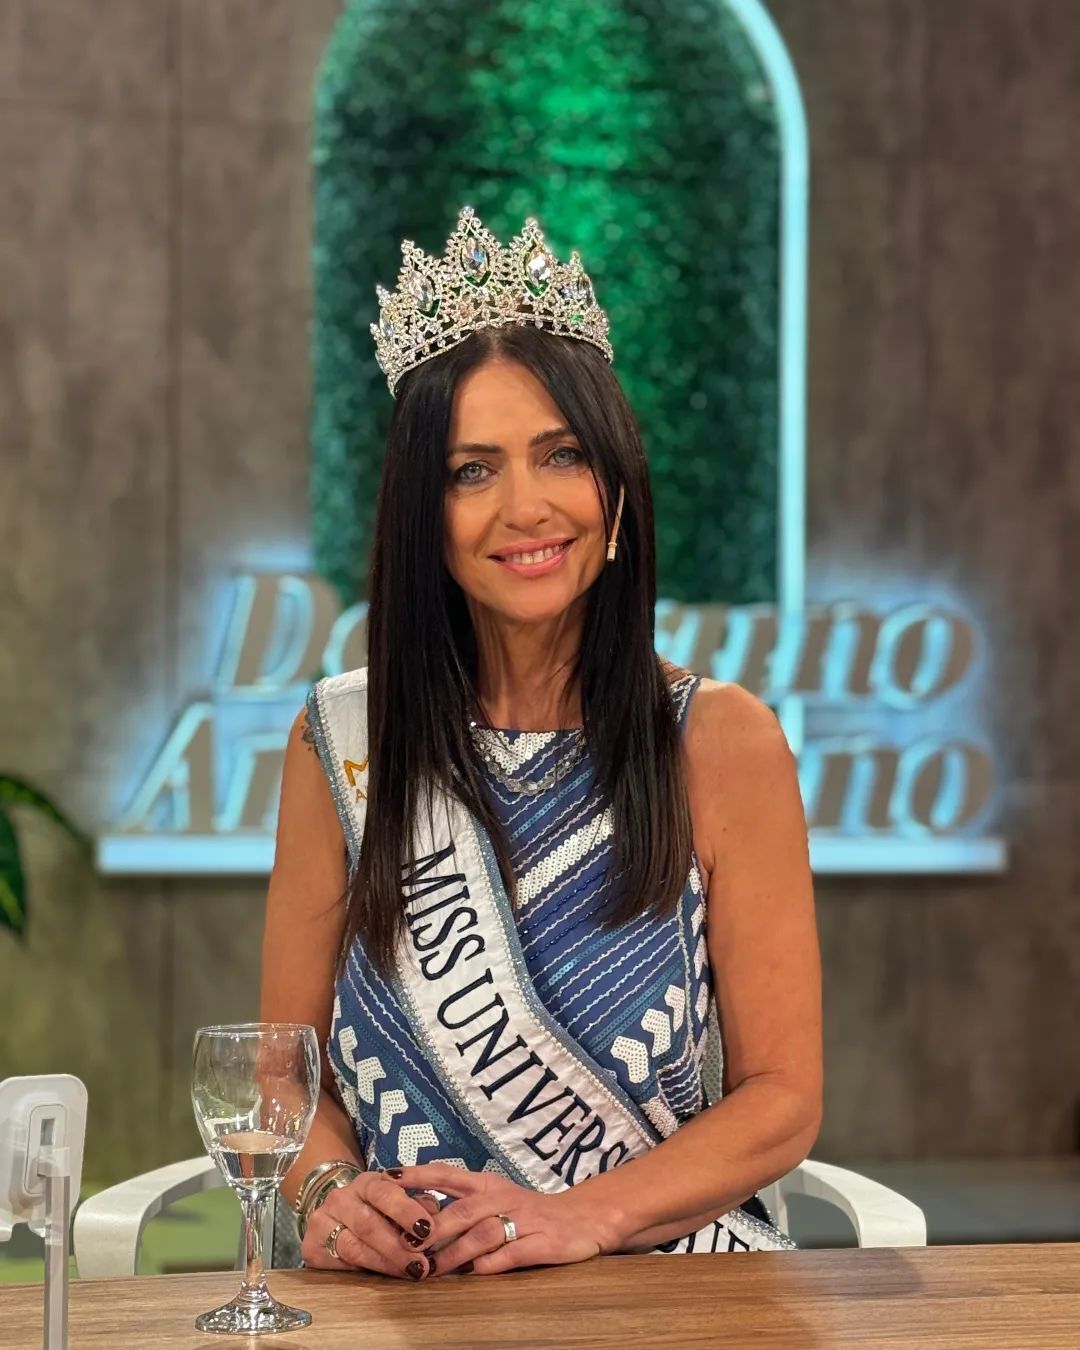 60-річна жінка вперше в історії перемогла на конкурсі краси і стала "Міс Всесвіт Буенос-Айрес": який вигляд має Алехандра Родрігес
